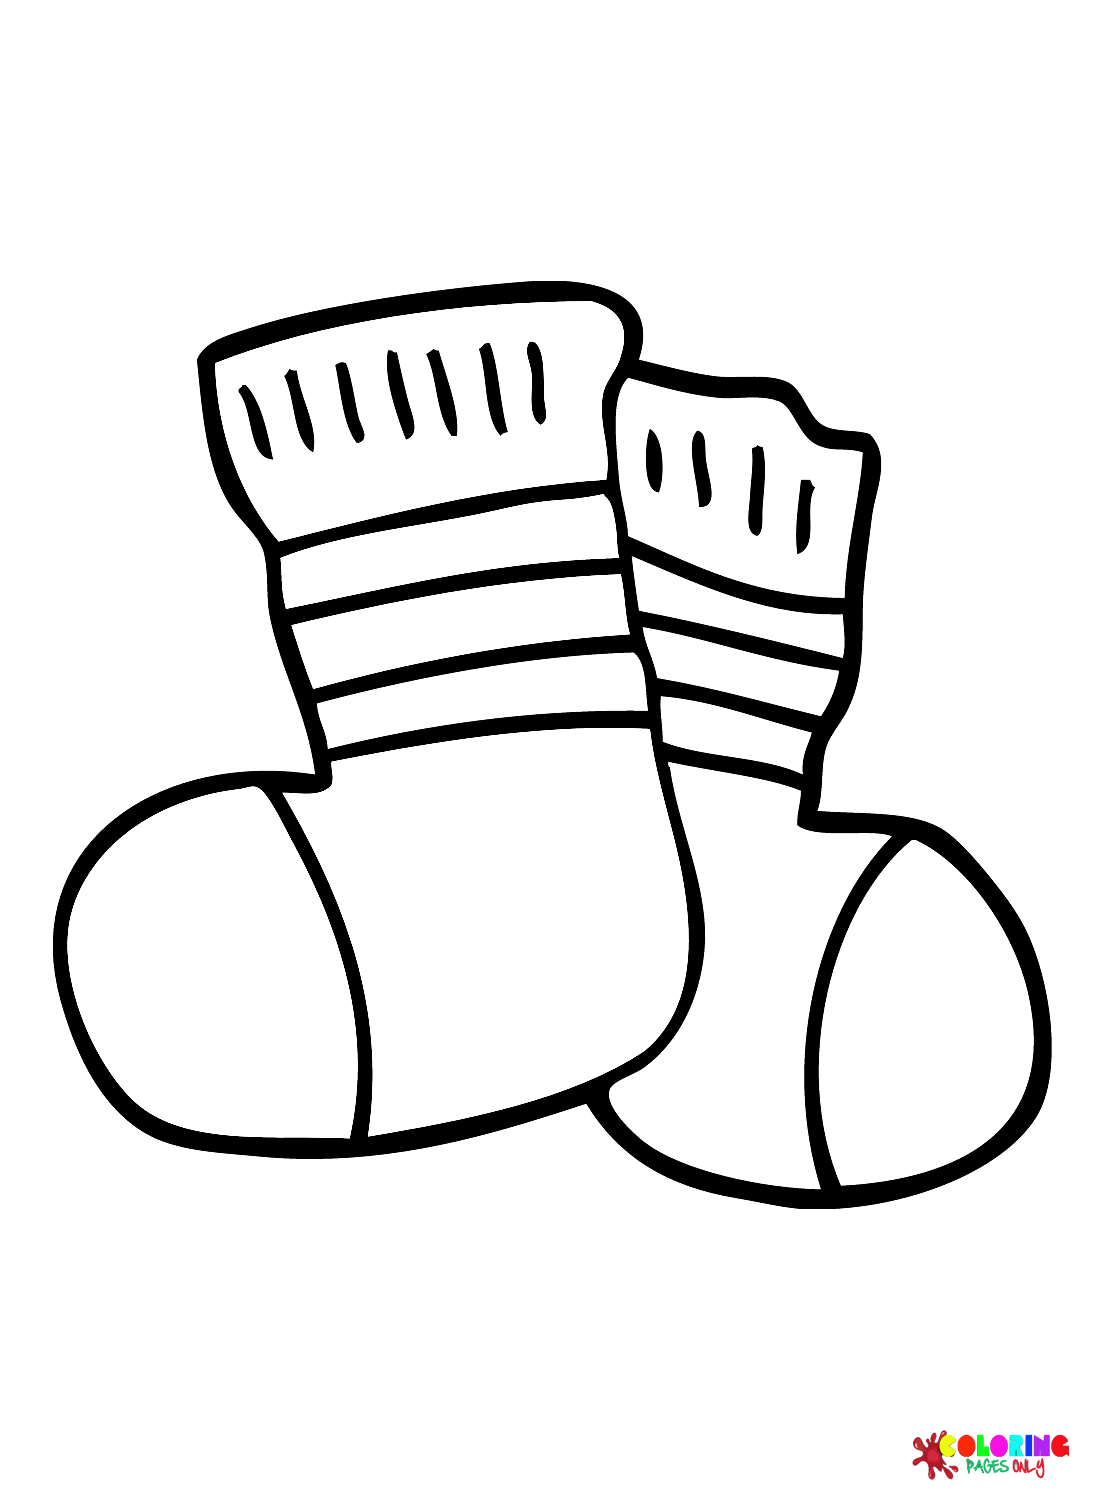 Изображения Носки из Socks